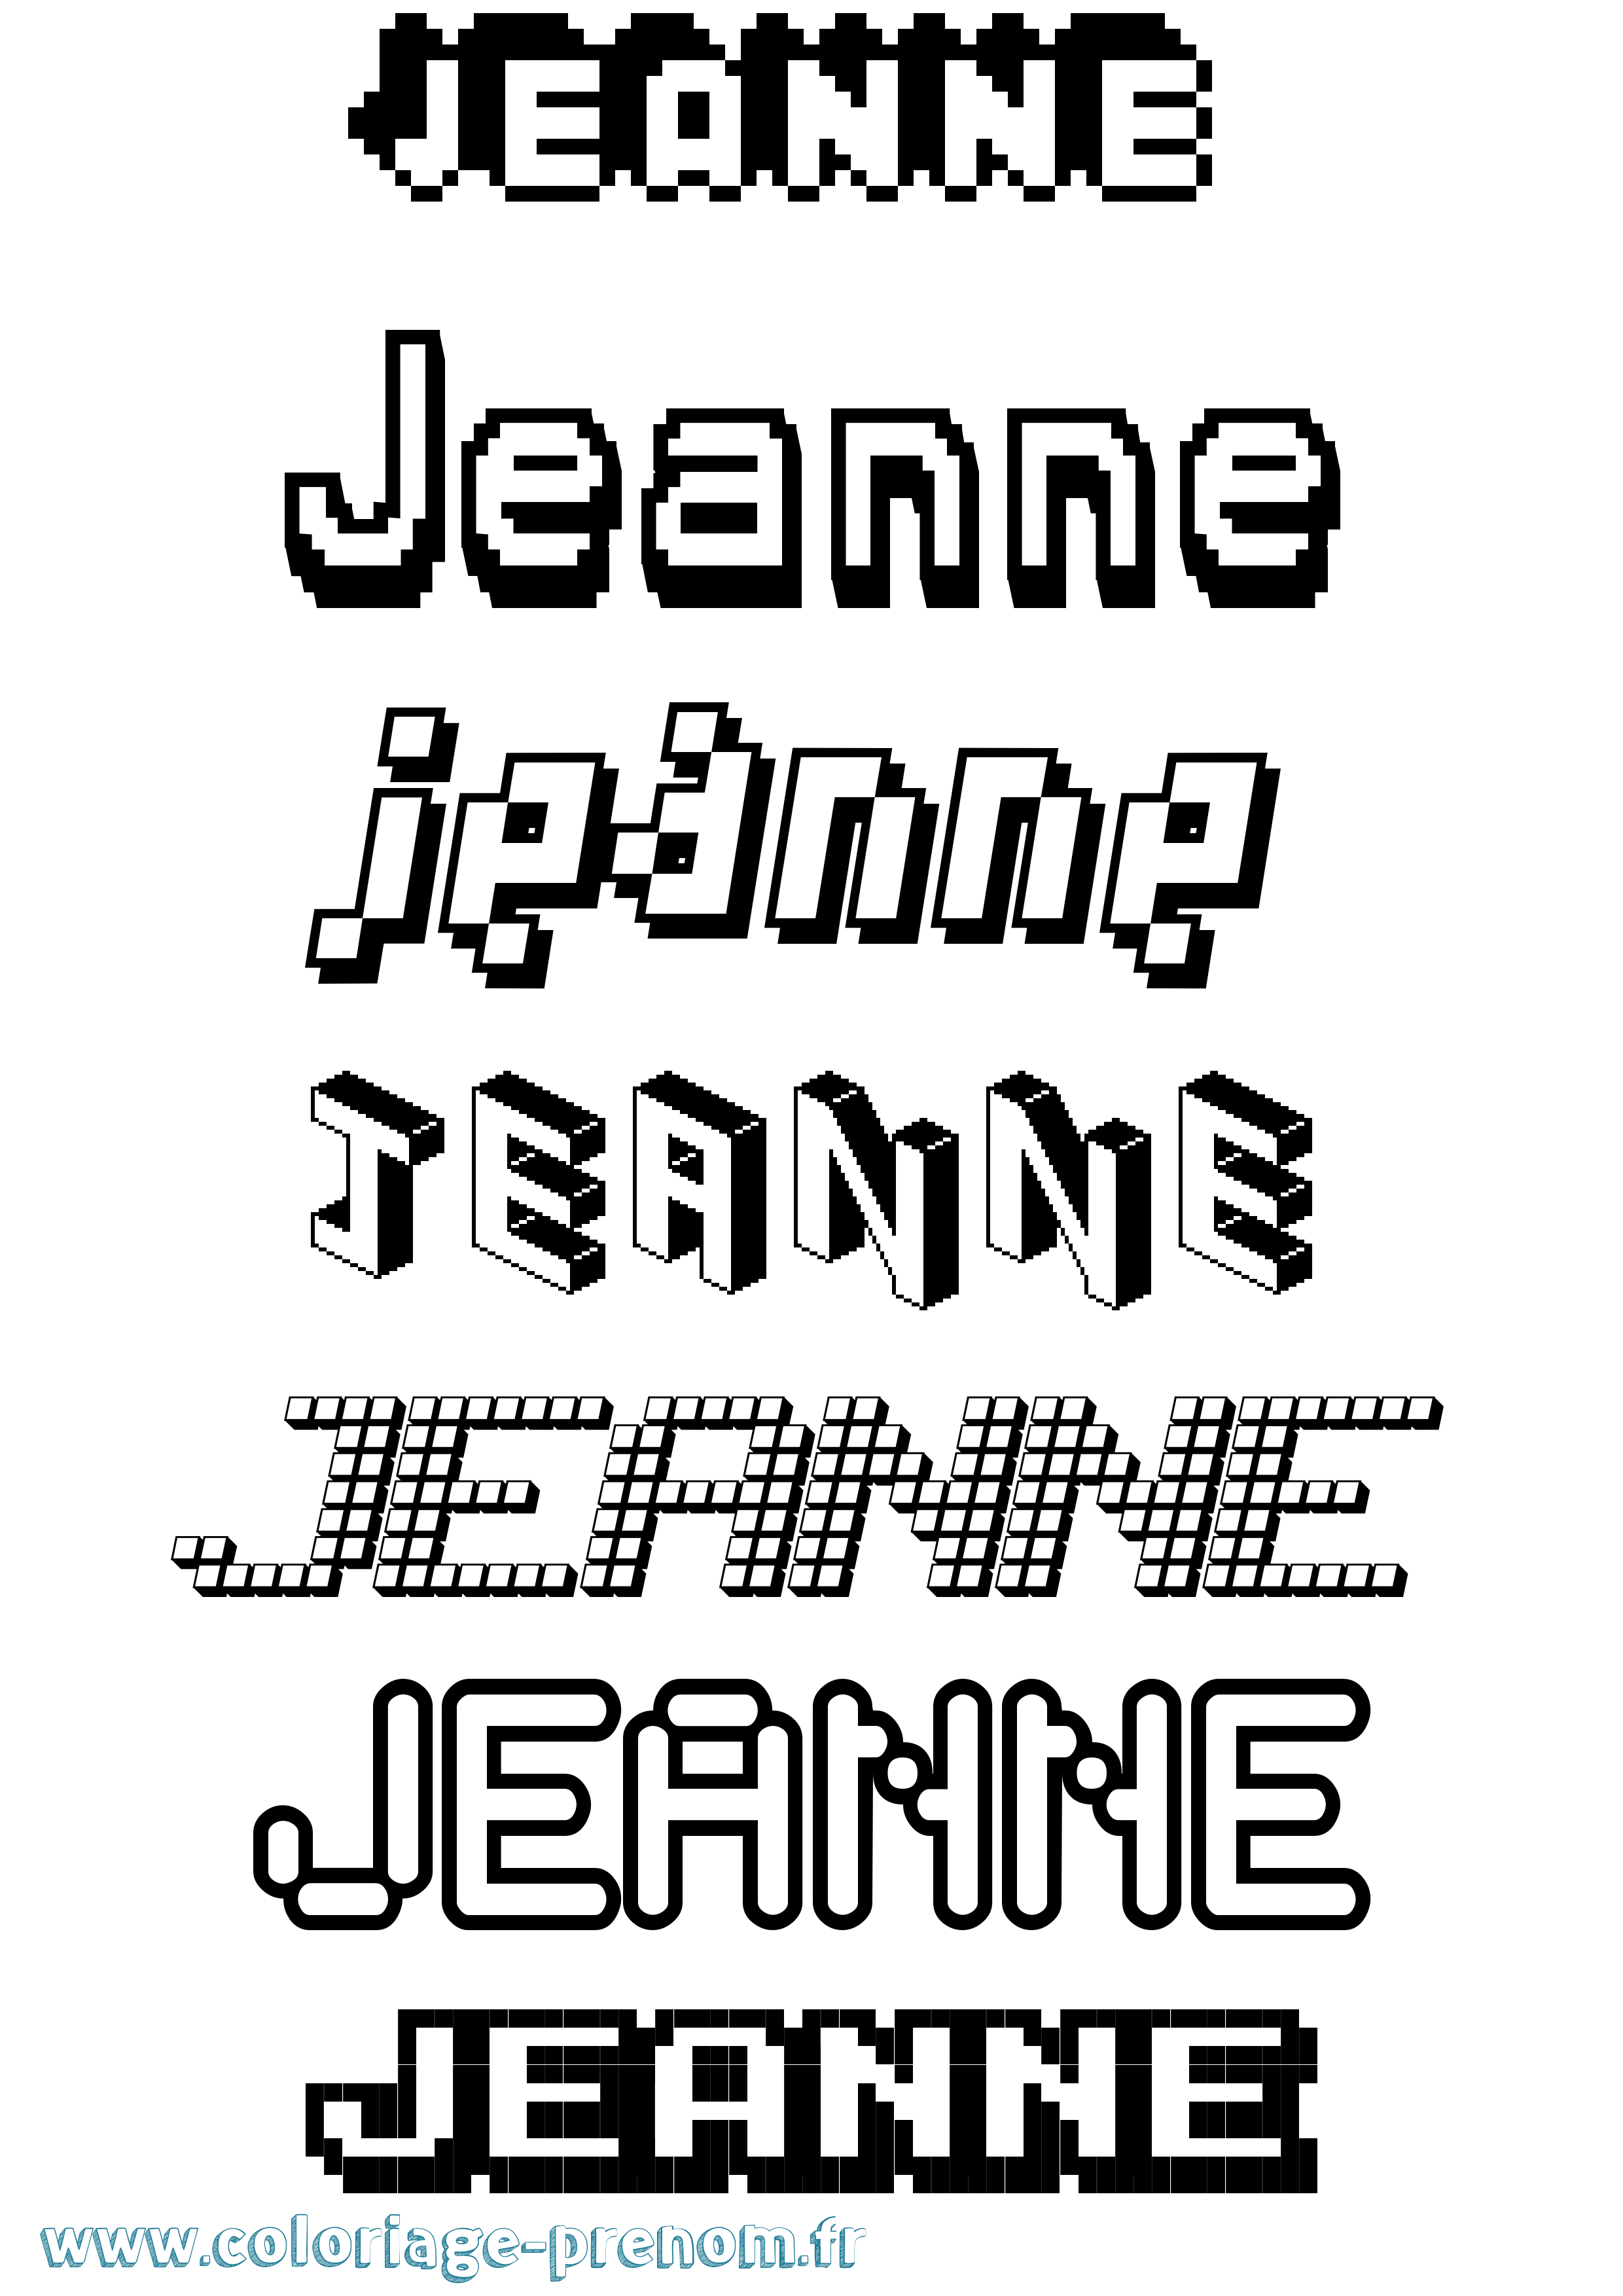 Coloriage prénom Jeanne Pixel